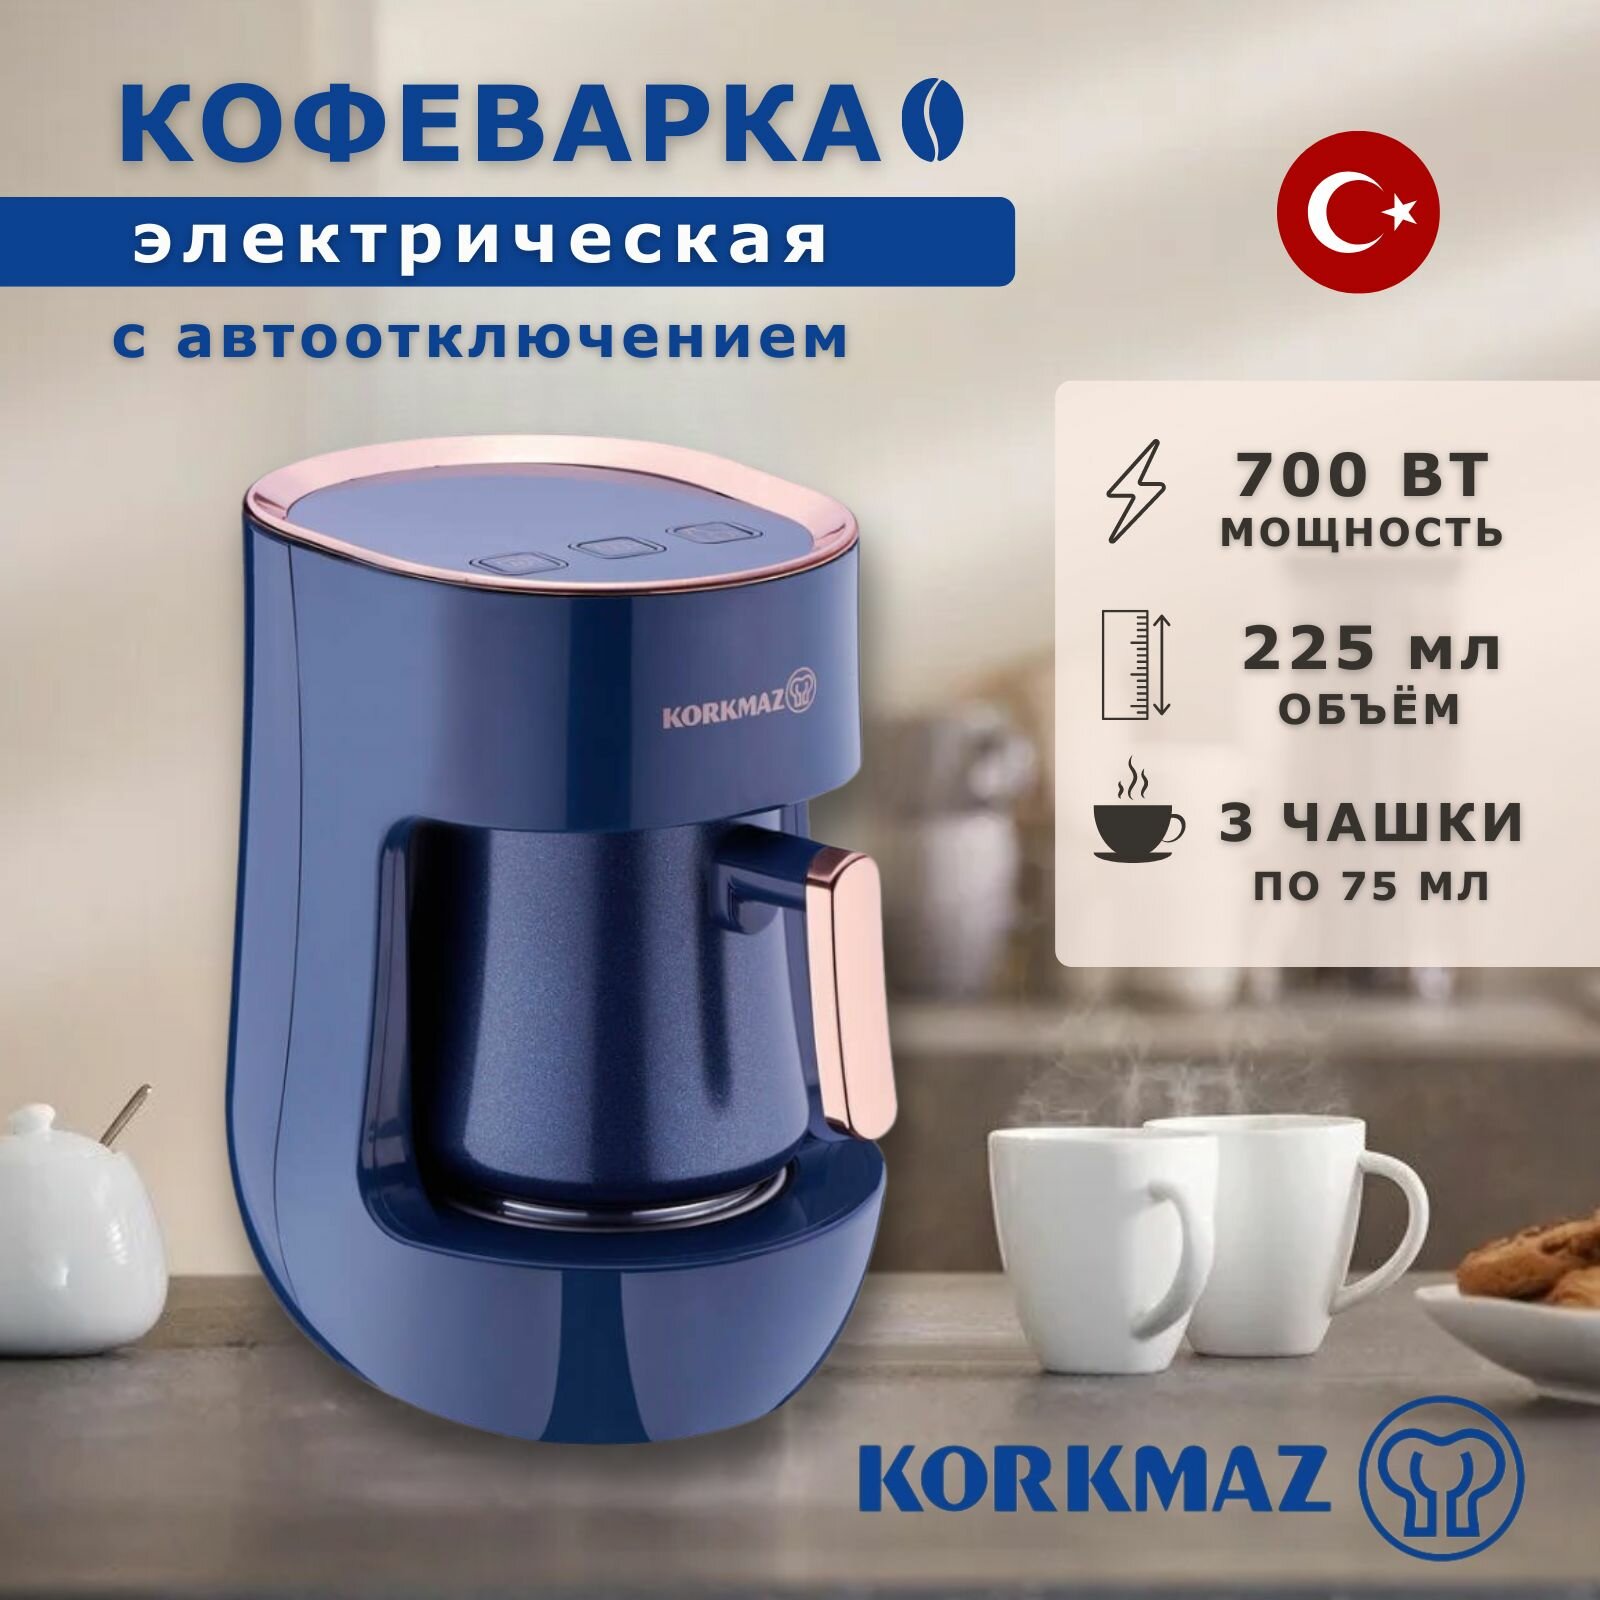 Турецкая кофеварка - турка с автоотключением, Электрическая кофеварка Korkmaz Otantik, 3 чашки - фотография № 1